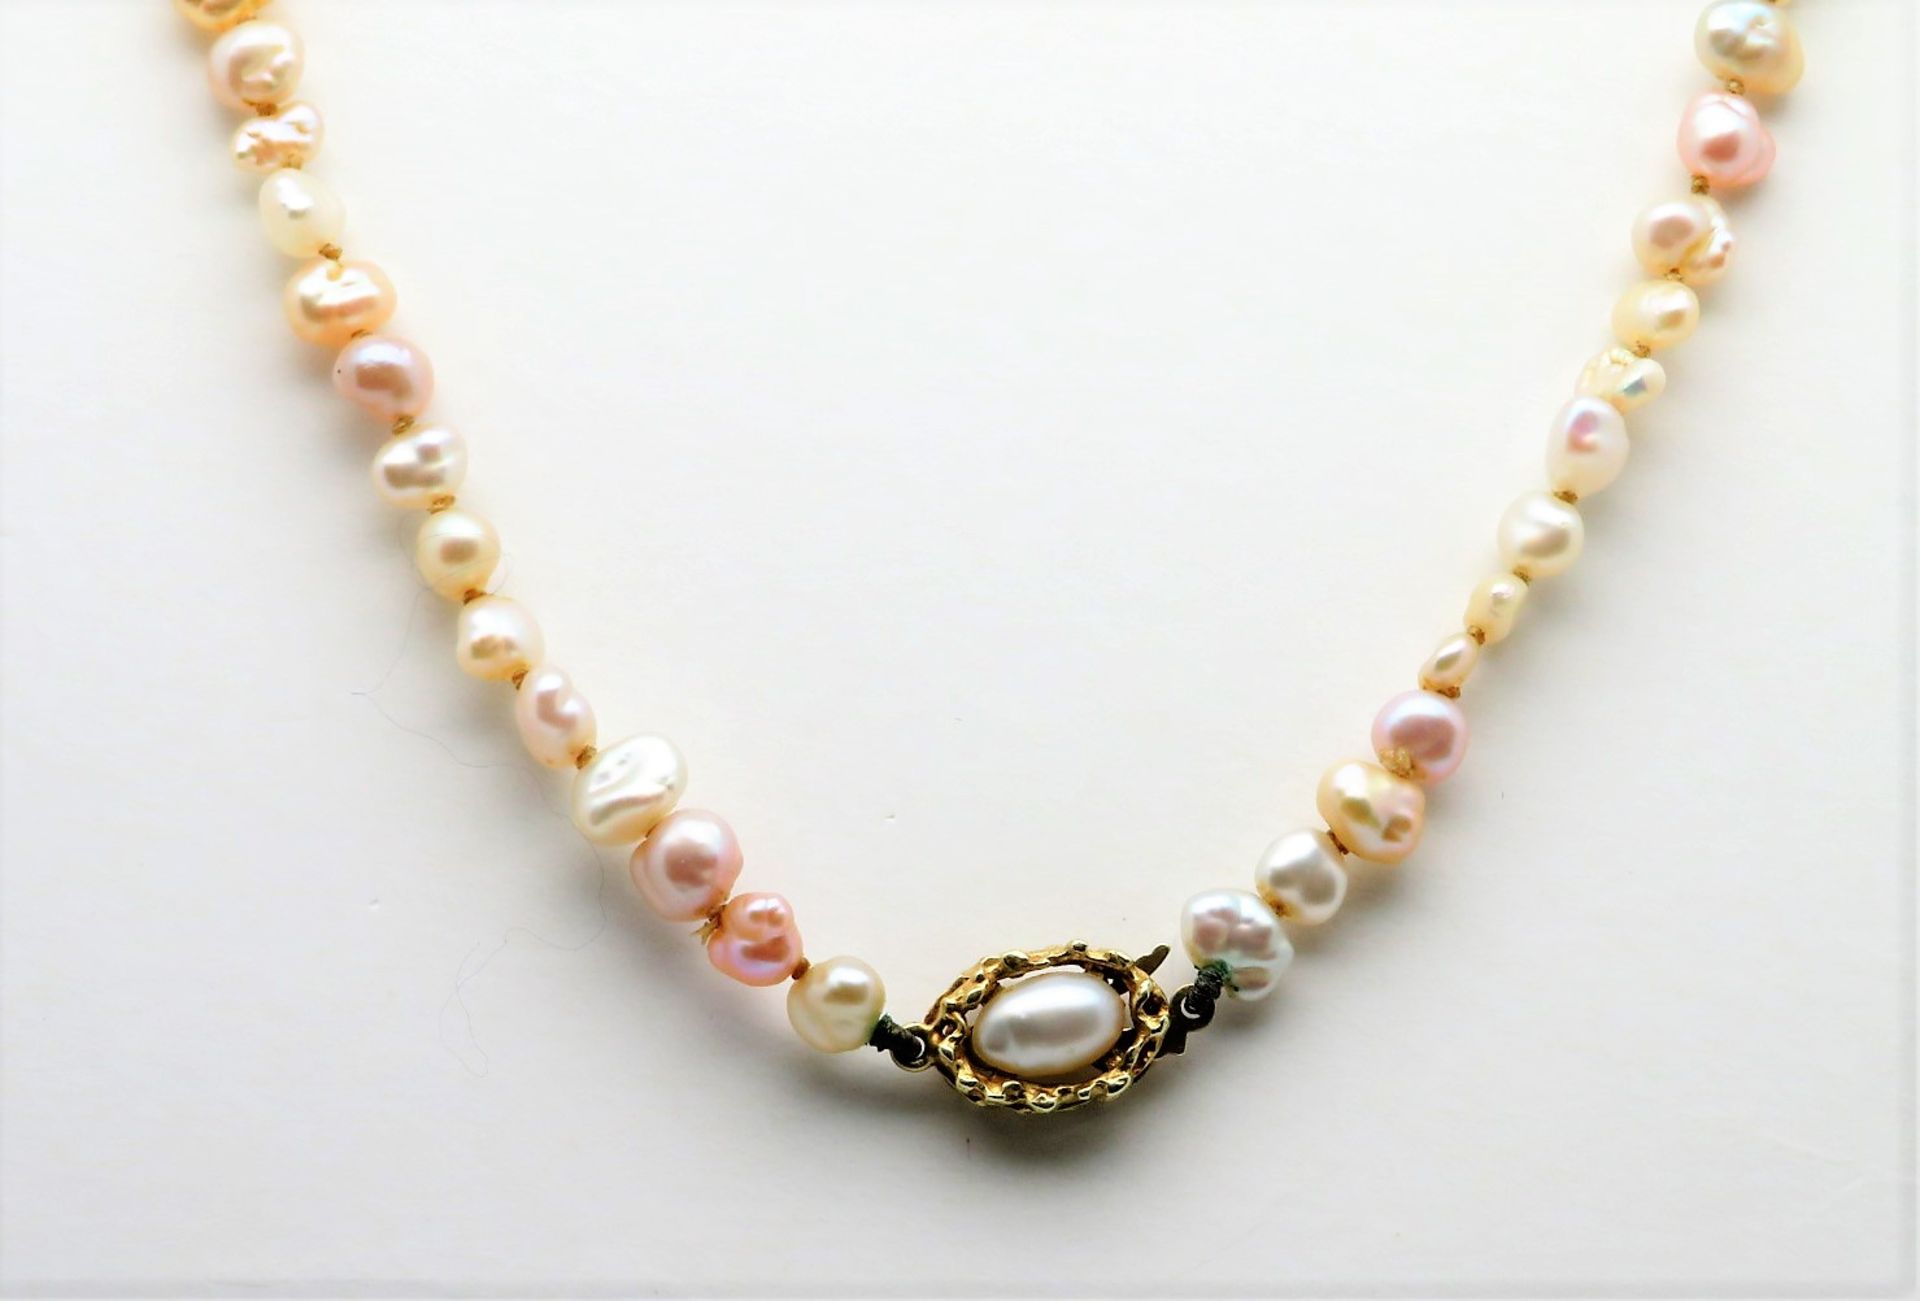 Perlenkette, 14 kt Gelbgold-Schließe besetzt mit Perle, gepunzt, l 38,4 cm, d 0,6 cm.